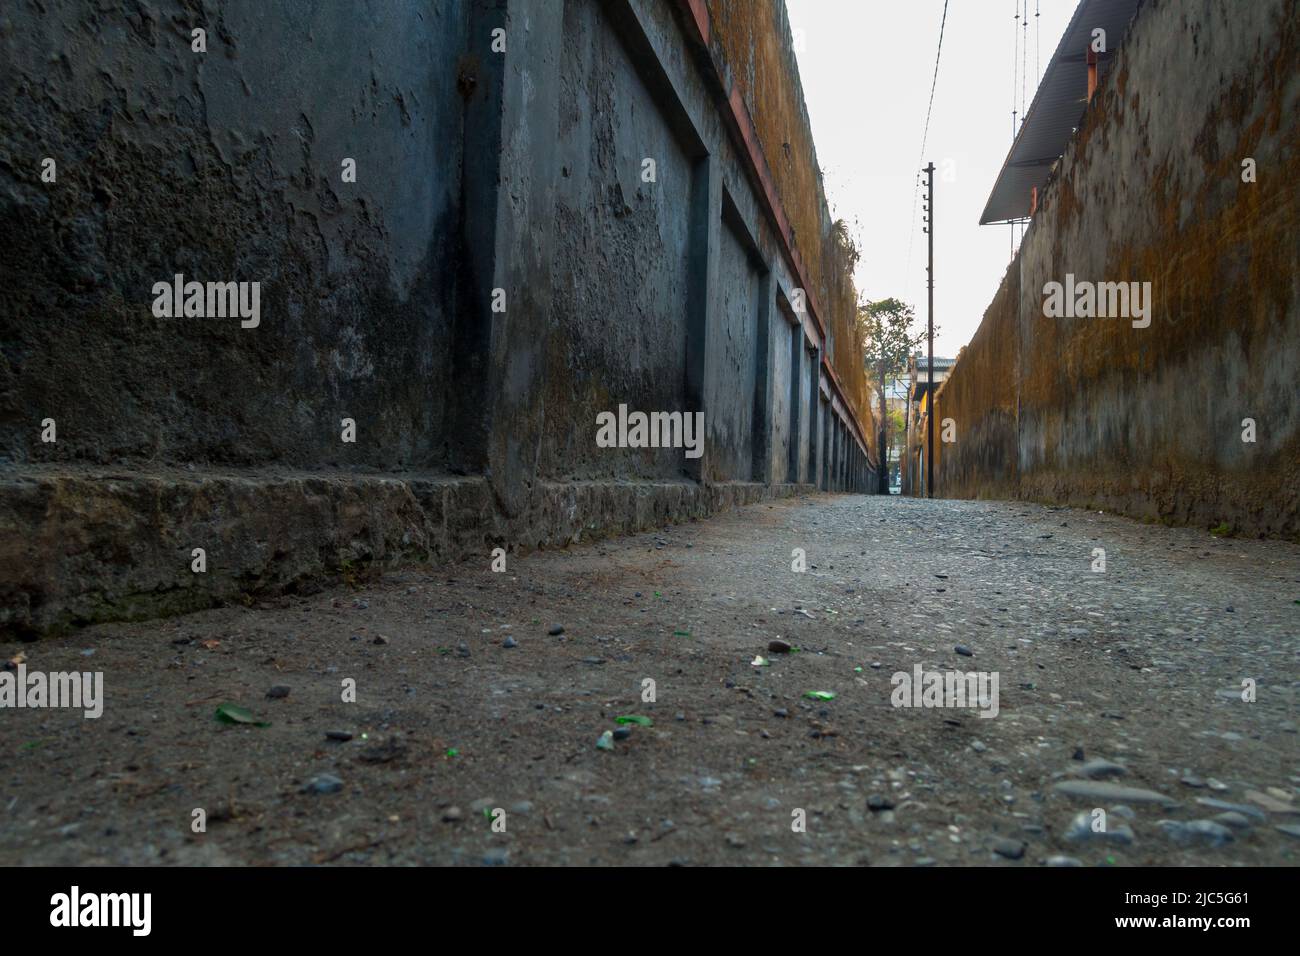 Eine Nahaufnahme einer leeren alten schmalen Gasse mit großen Mauern auf beiden Seiten. Uttarakhand Indien Stockfoto